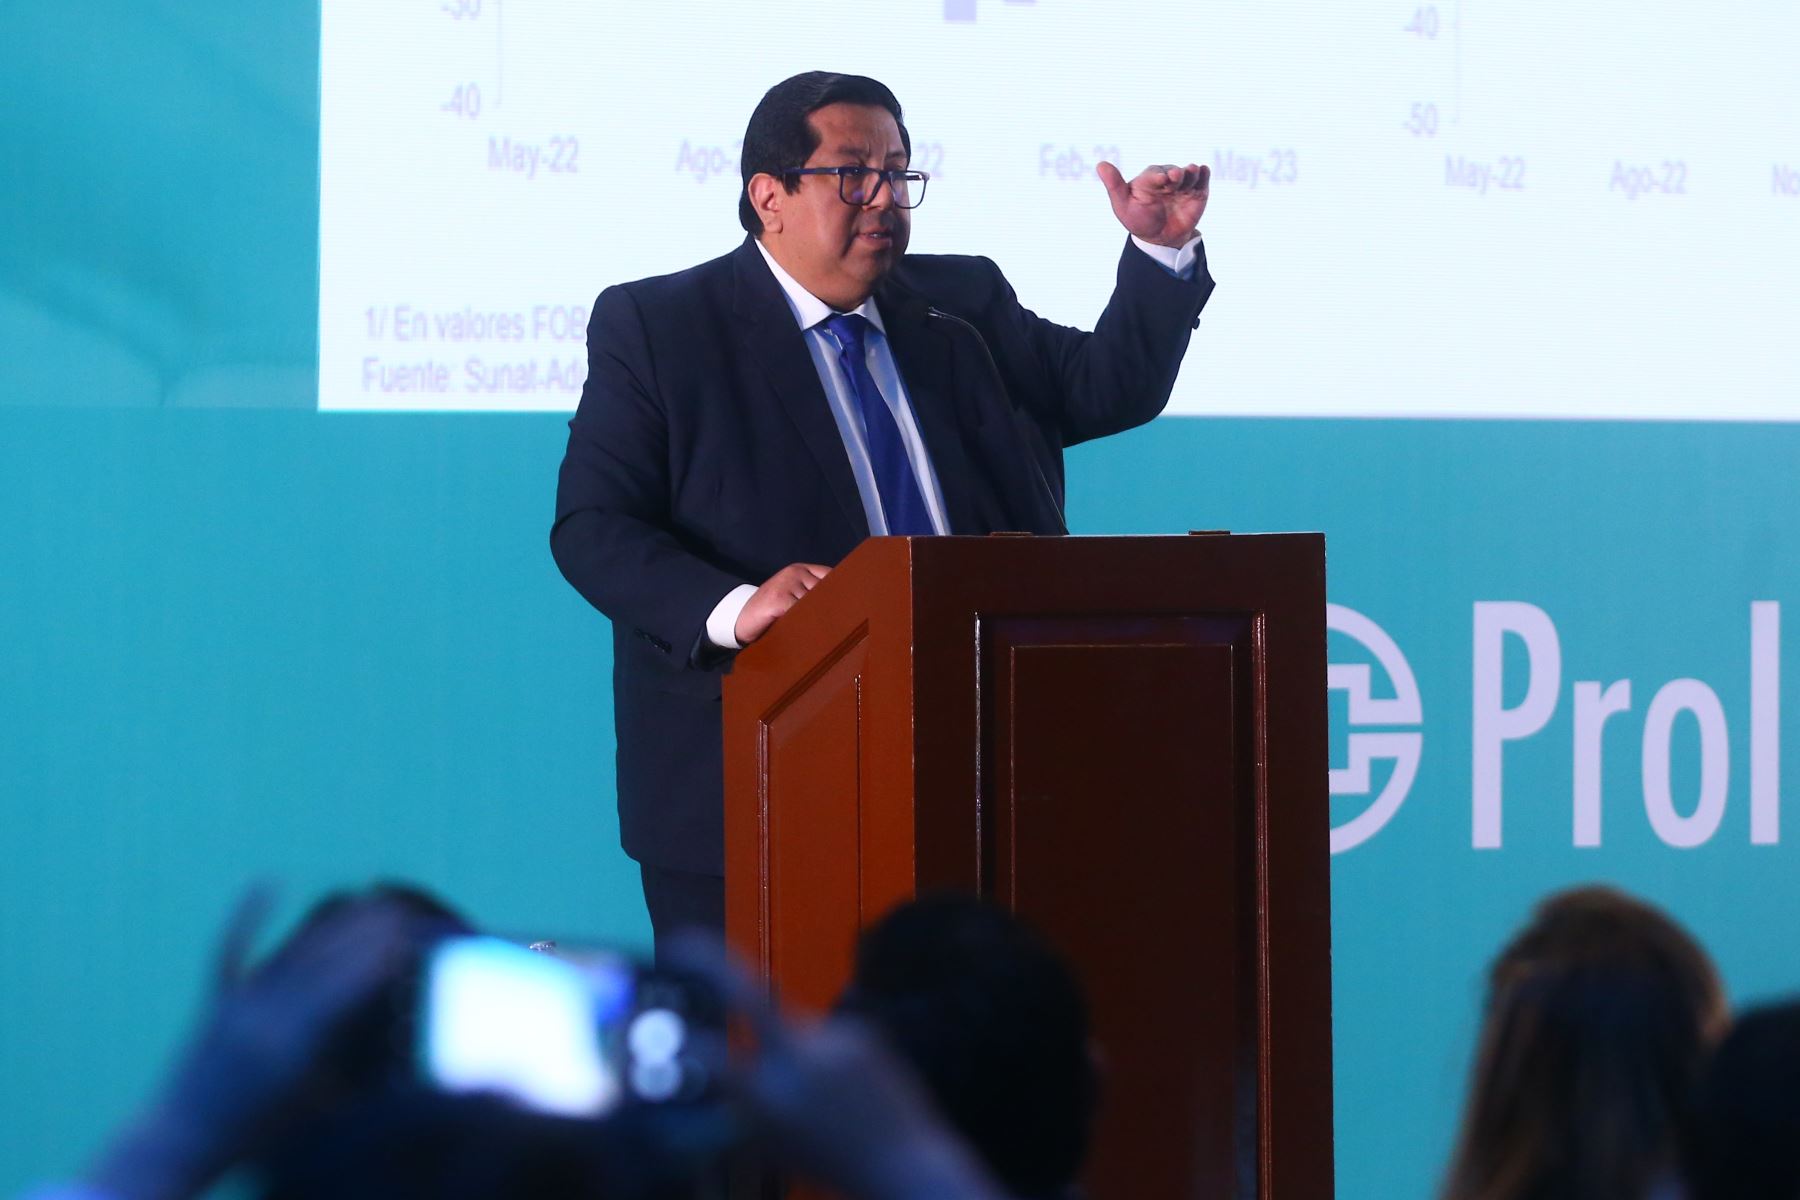 Ministro de Economía y Finanzas, Alex Contreras. ANDINA/Eddy Ramos